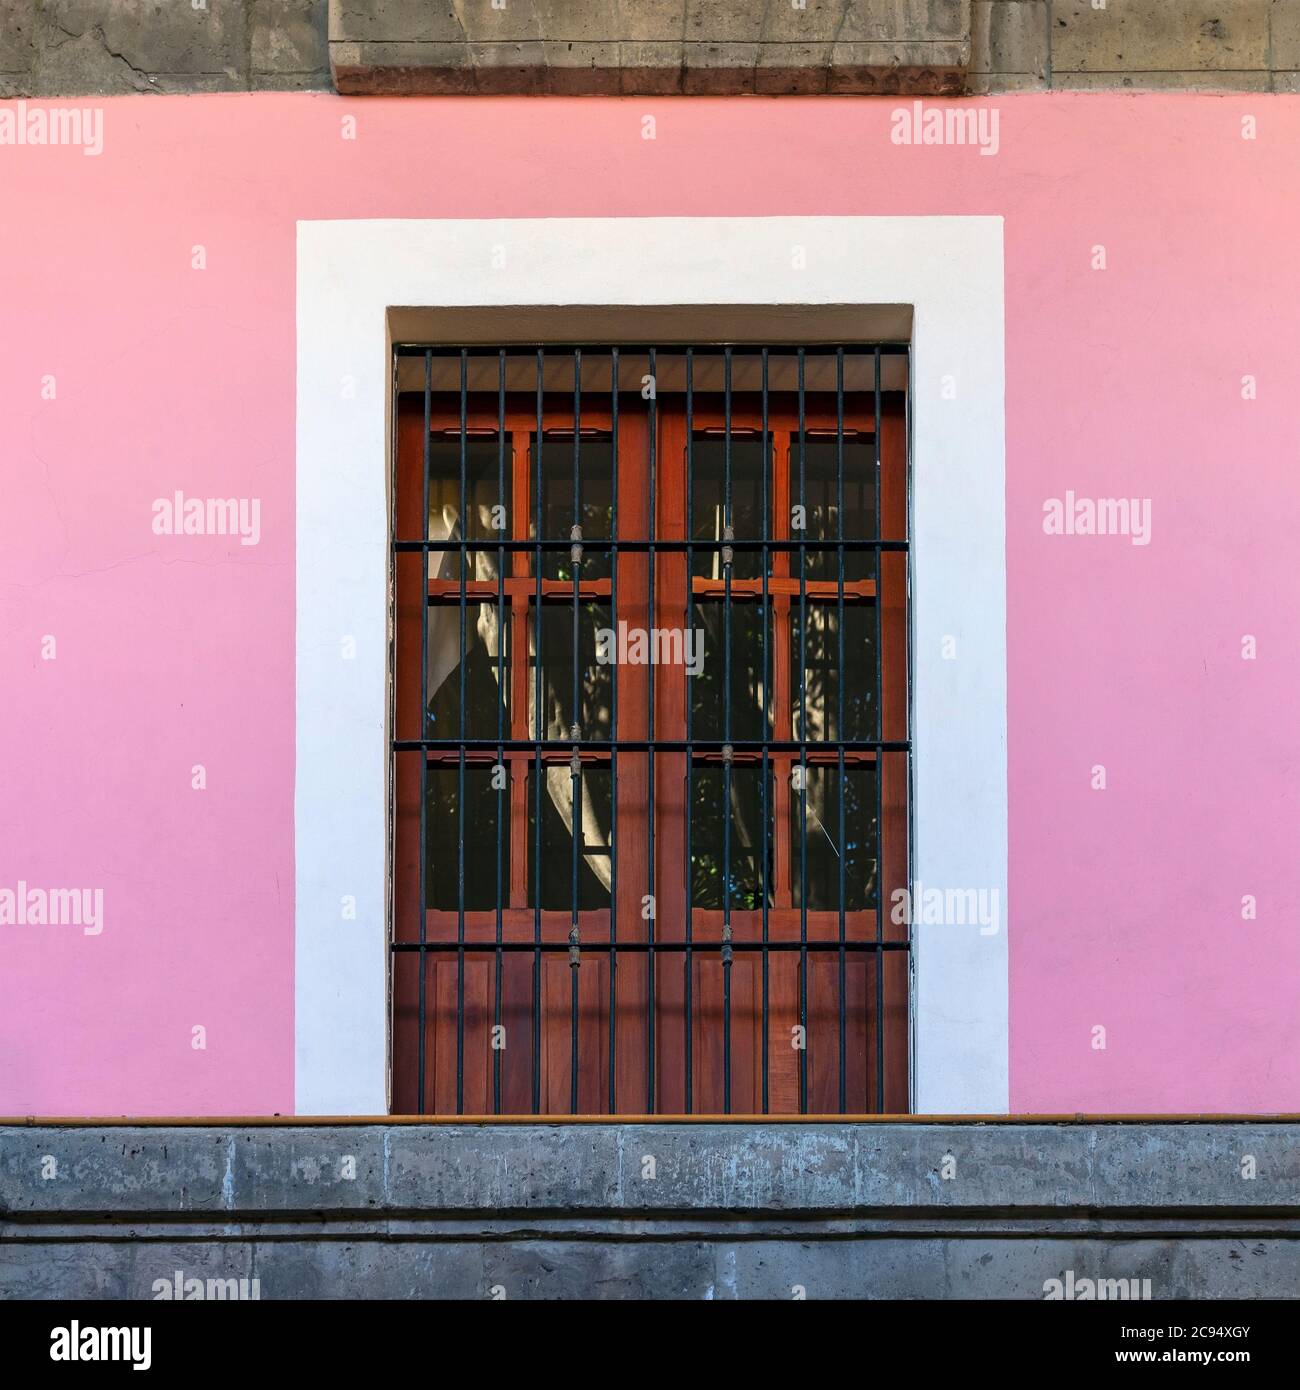 Architettura di stile coloniale tradizionale nel quartiere di Coyoacan con una cornice di finestre in legno e pareti di facciata rosa, Città del Messico, Messico. Foto Stock